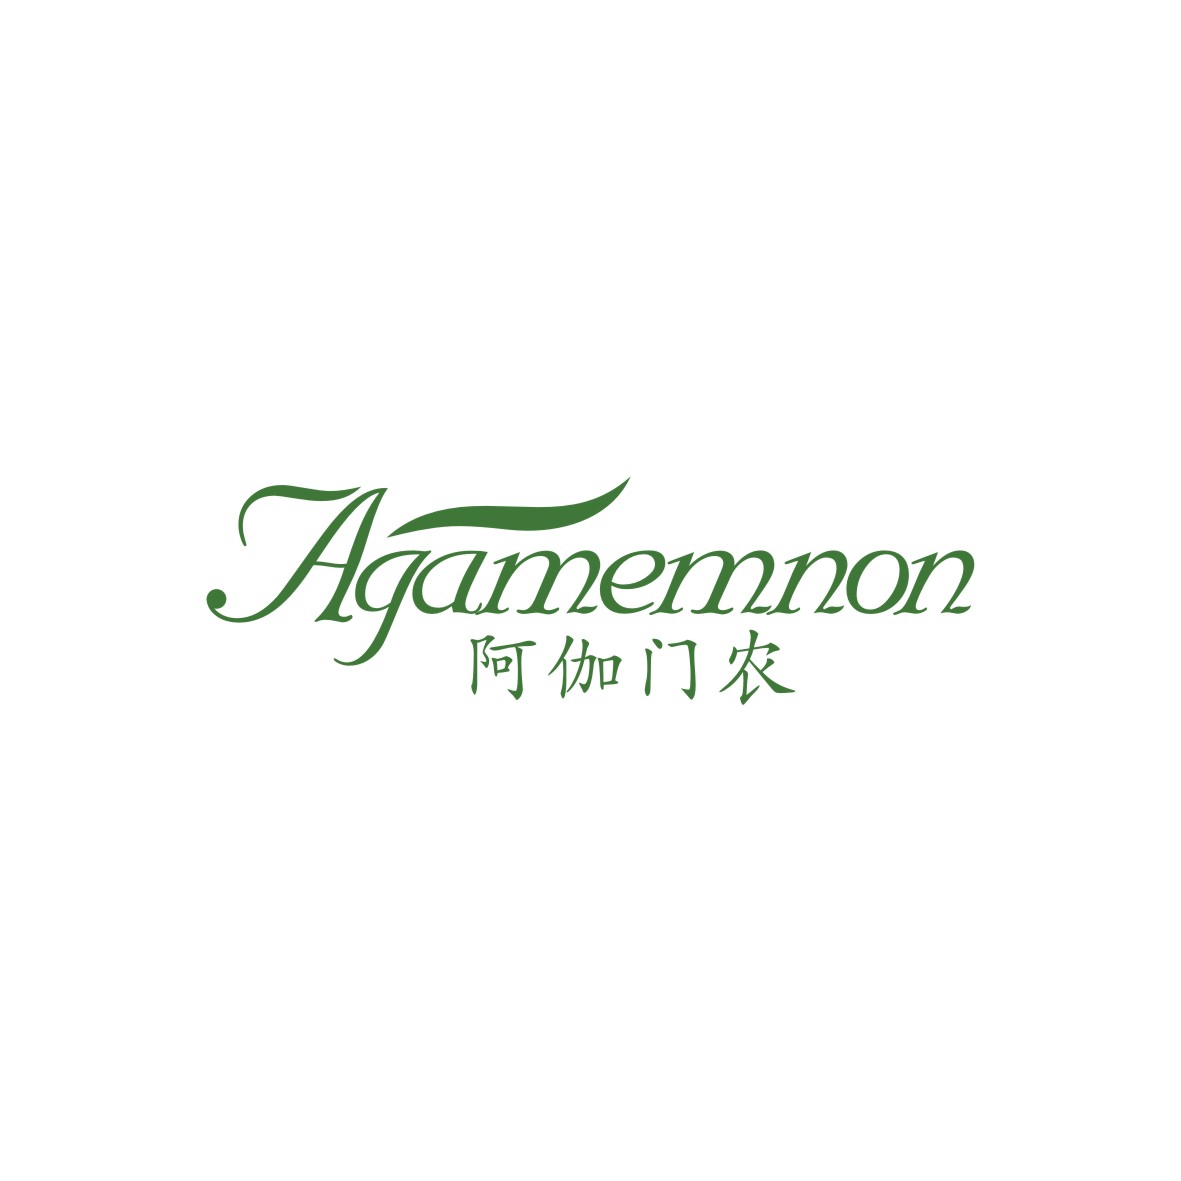 广州品翰文化发展有限公司商标阿伽门农 AGAMEMNON（21类）商标买卖平台报价，上哪个平台最省钱？